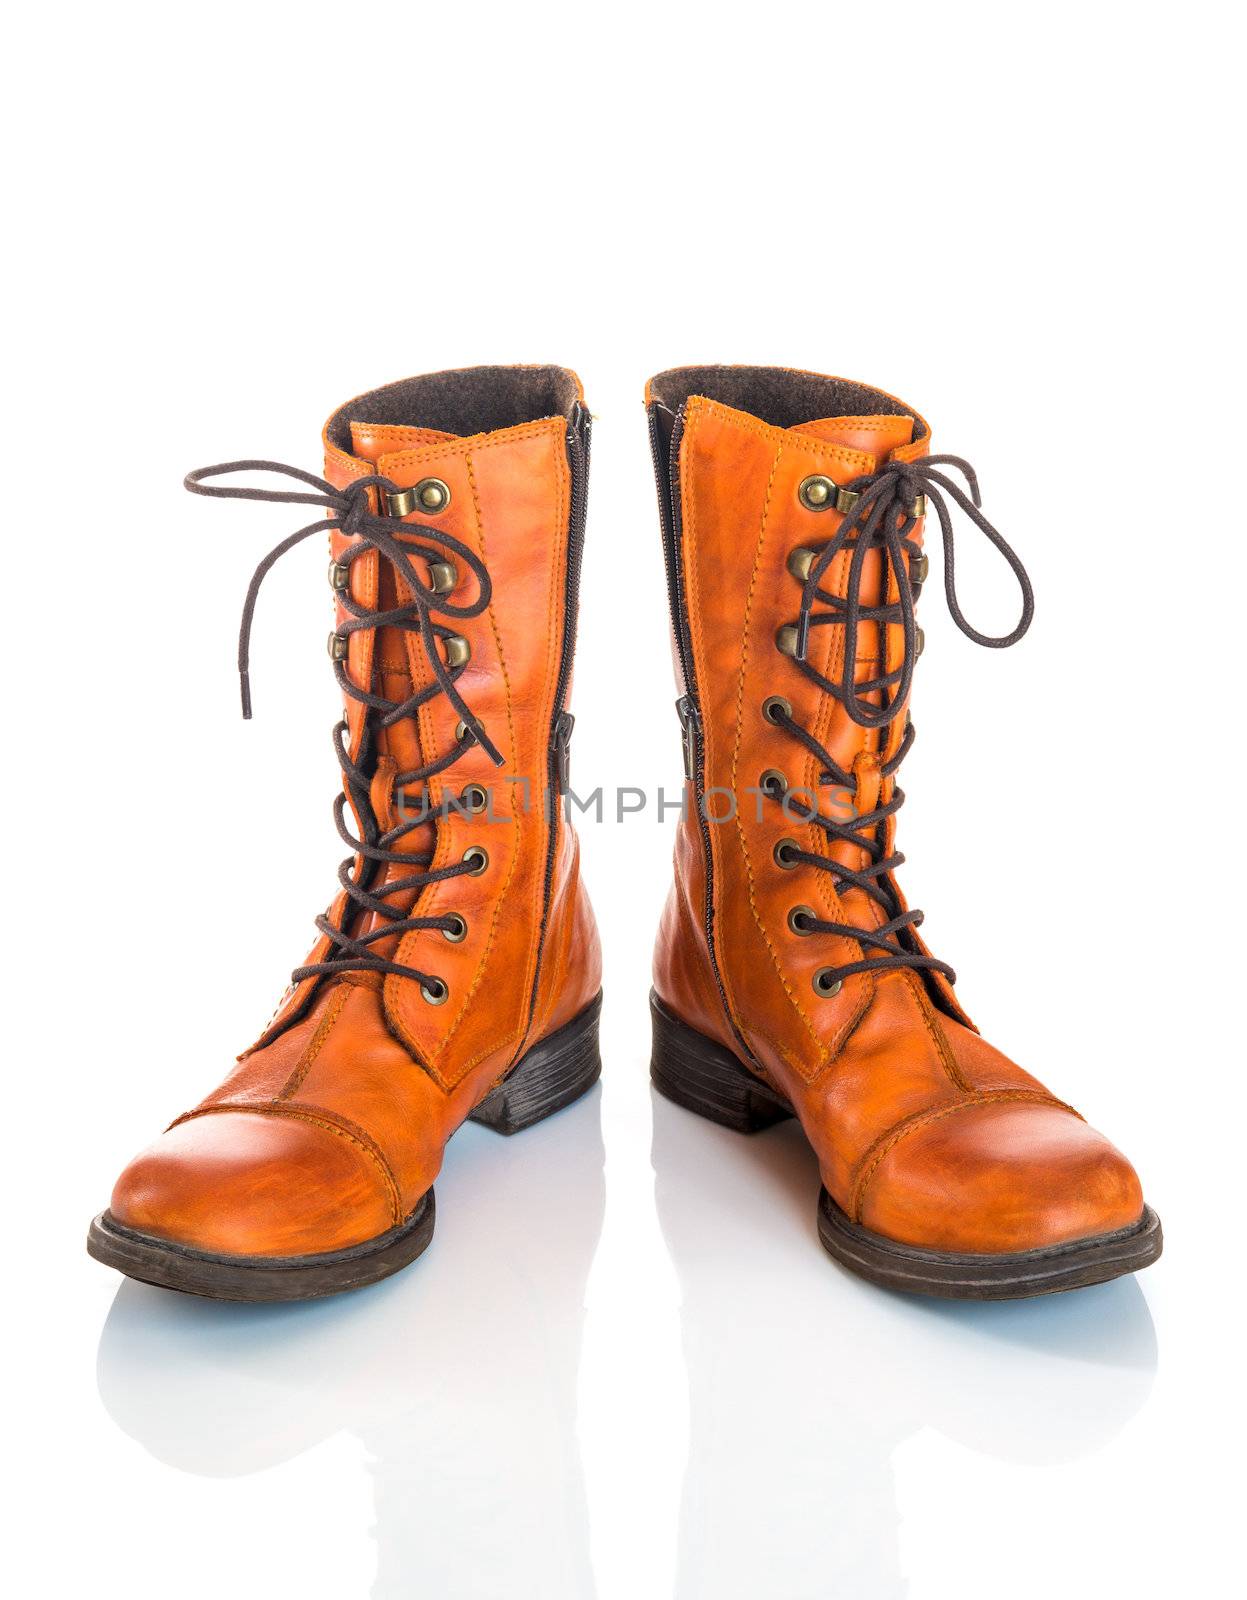 Orange leather boots, isolated on white background.